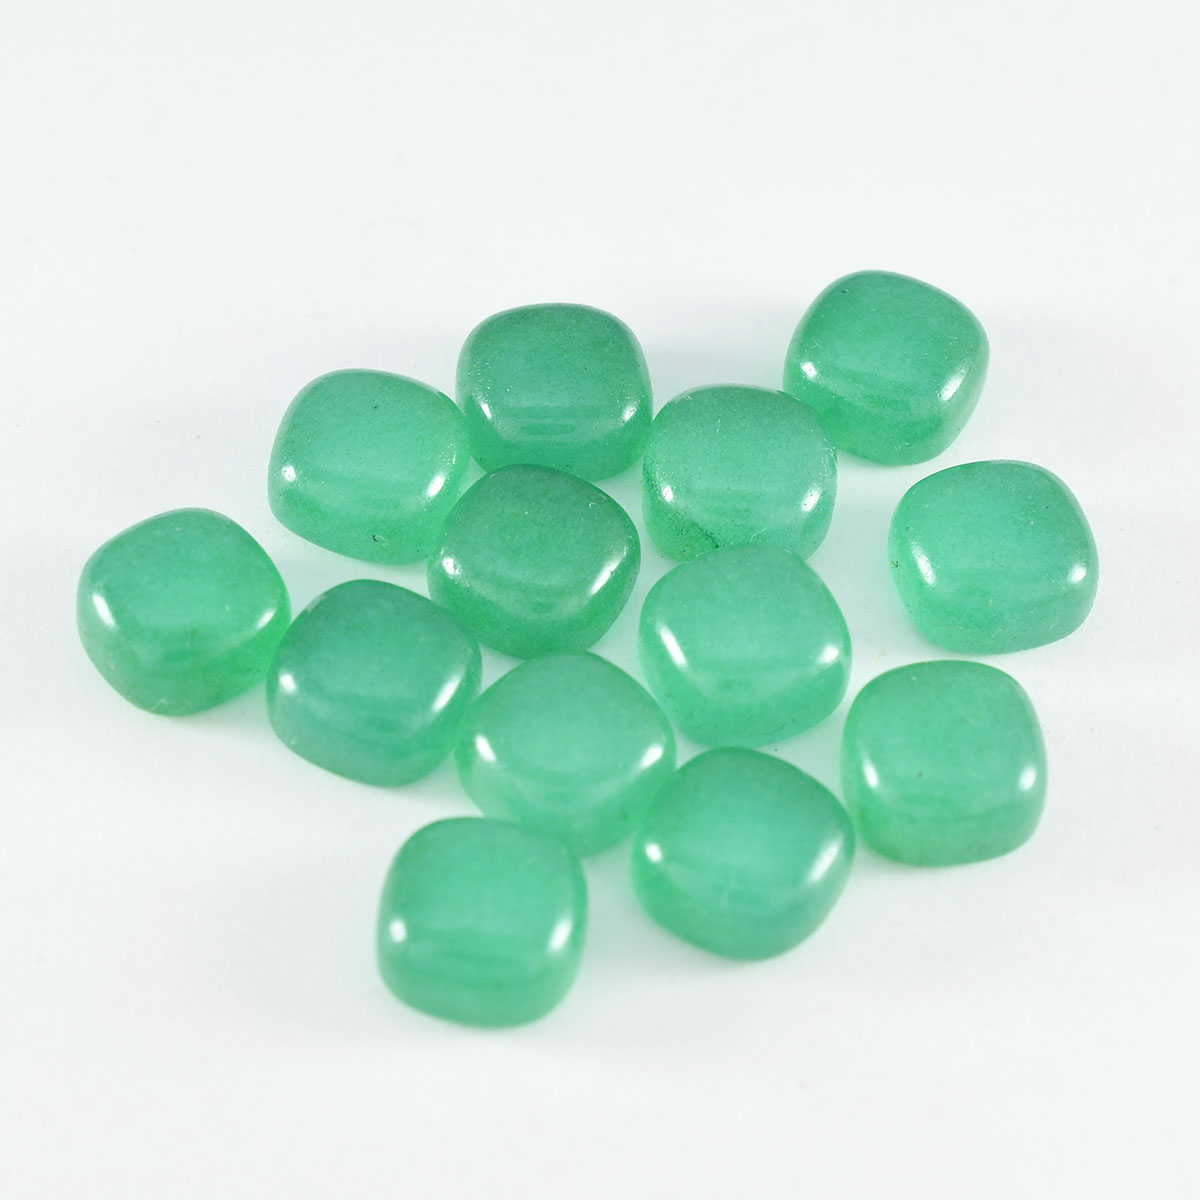 Riyogems 1PC Green Onyx Cabochon 5x5 mm Cushion Shape A Quality Loose Gems